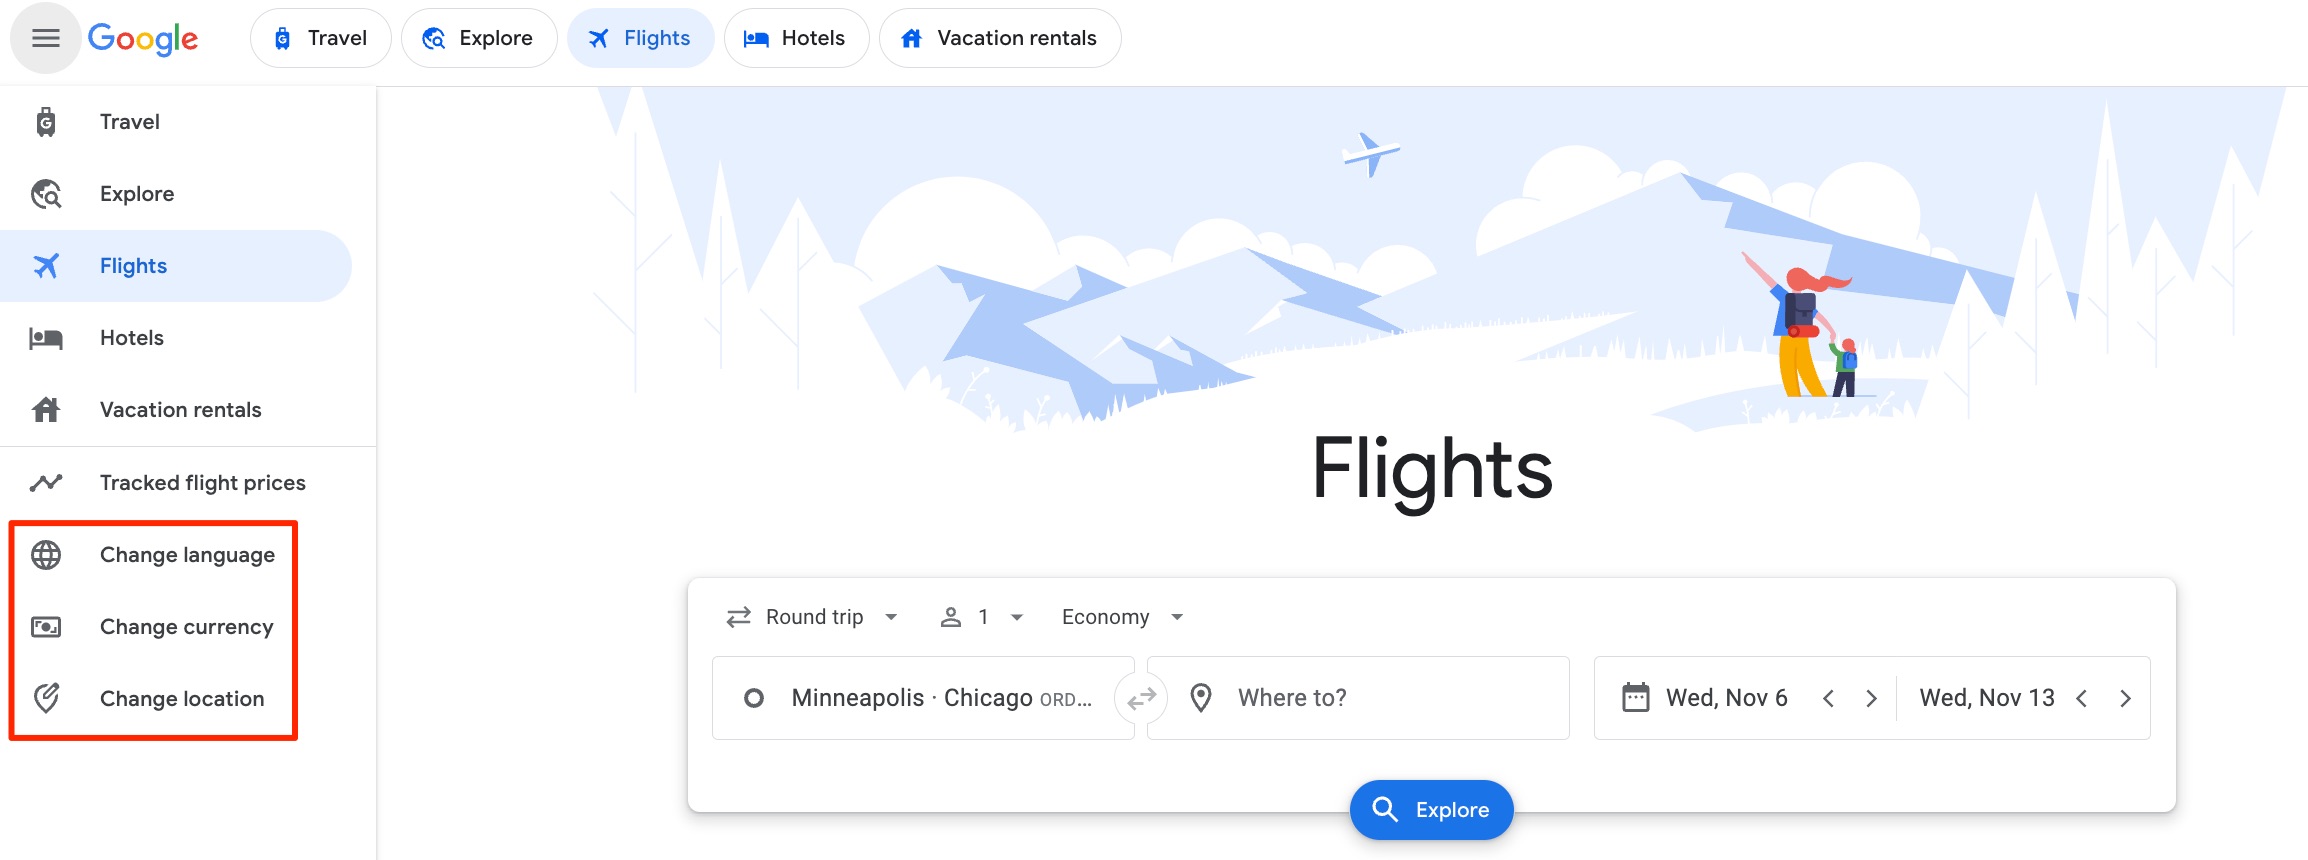 google flights menu options